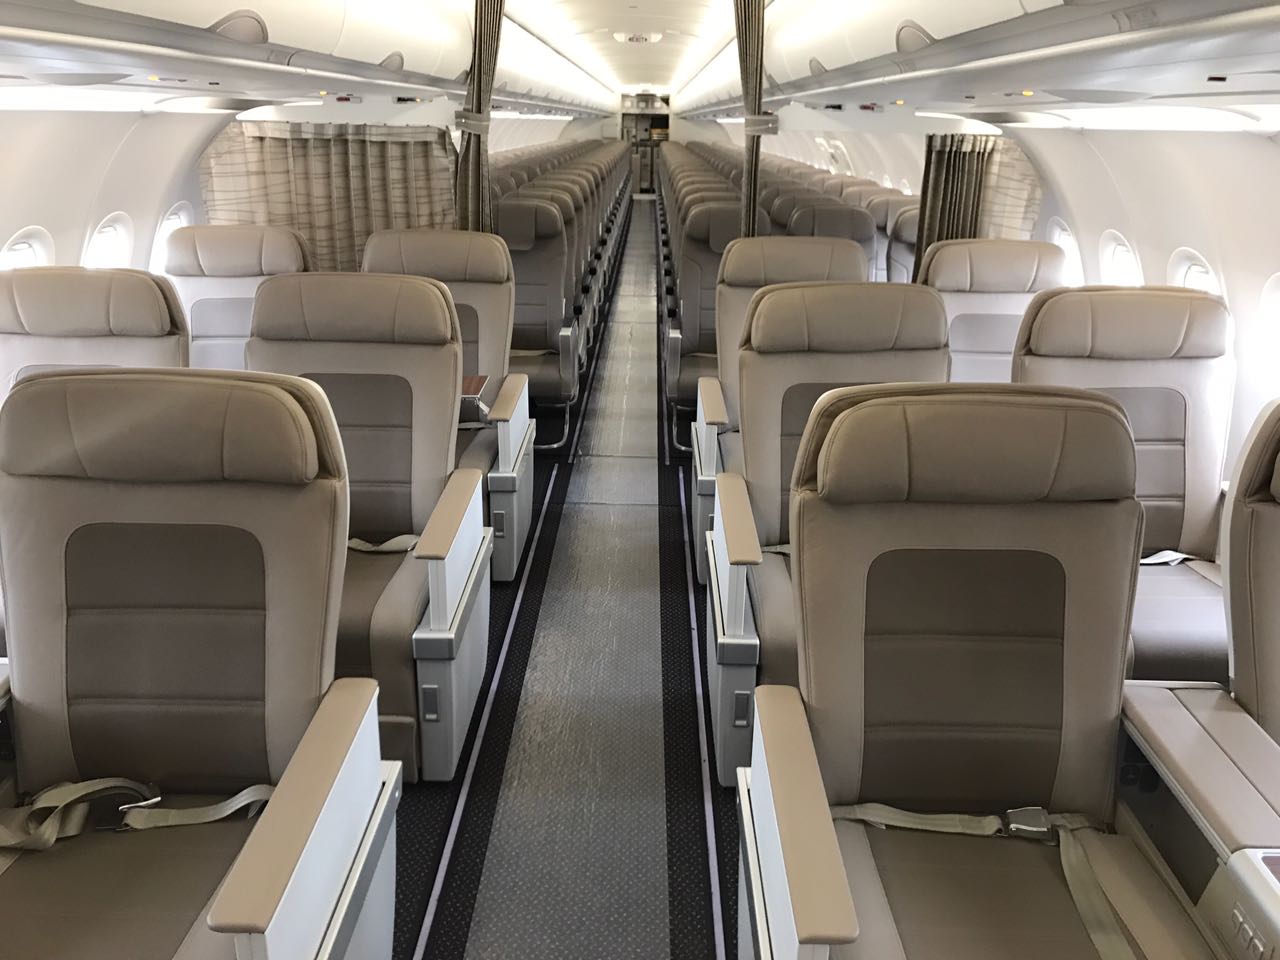 بالصور.. لأول مرة.. مقعدك يرحب بك على طائرة “الخطوط” إيرباص A320ceo